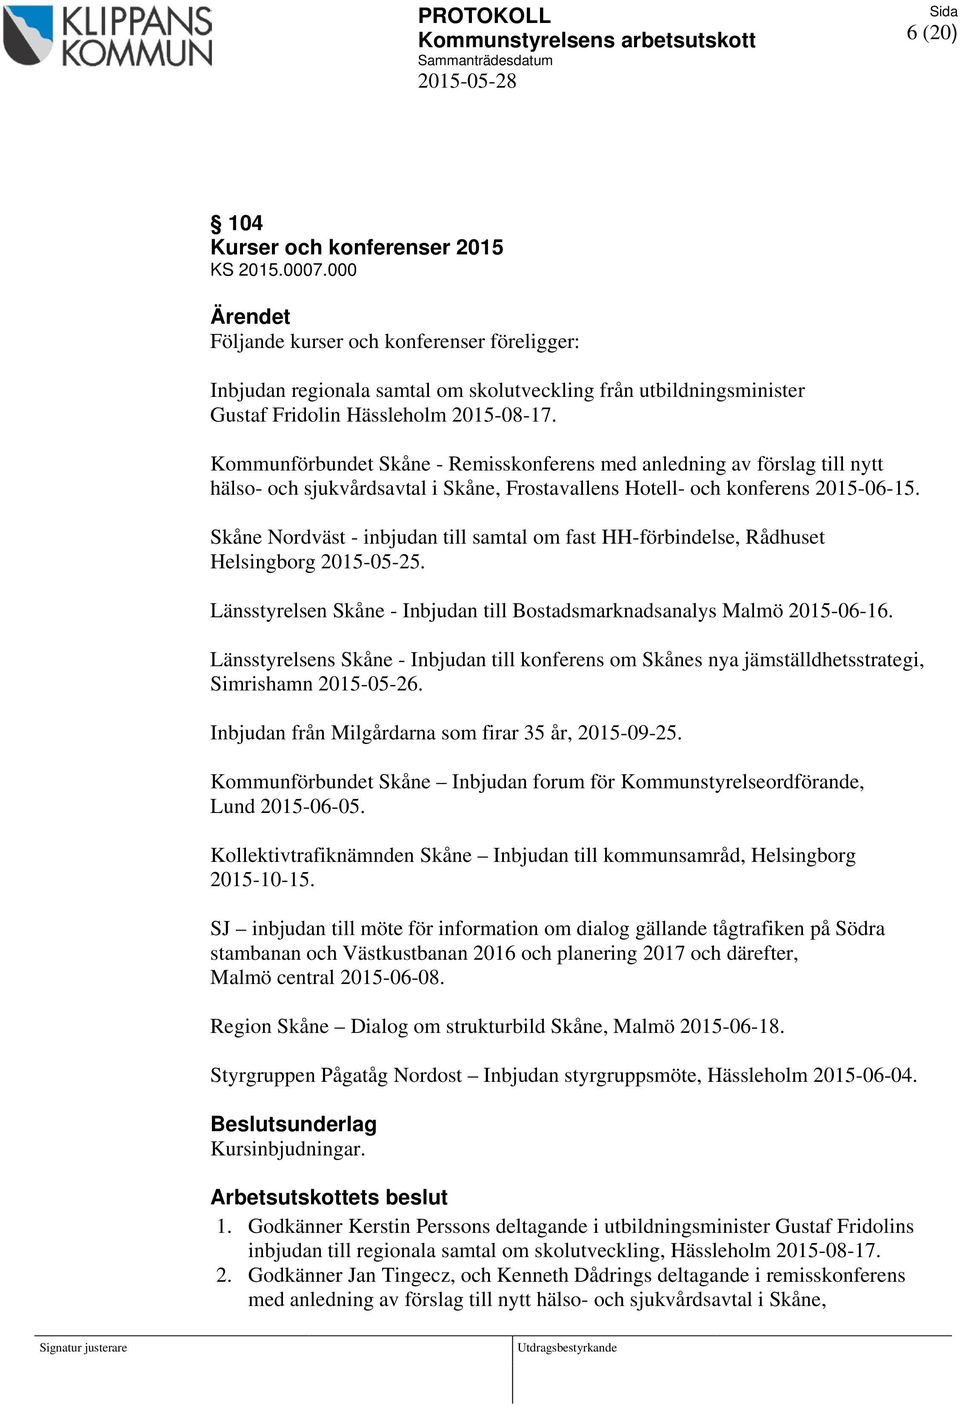 Kommunförbundet Skåne - Remisskonferens med anledning av förslag till nytt hälso- och sjukvårdsavtal i Skåne, Frostavallens Hotell- och konferens 2015-06-15.